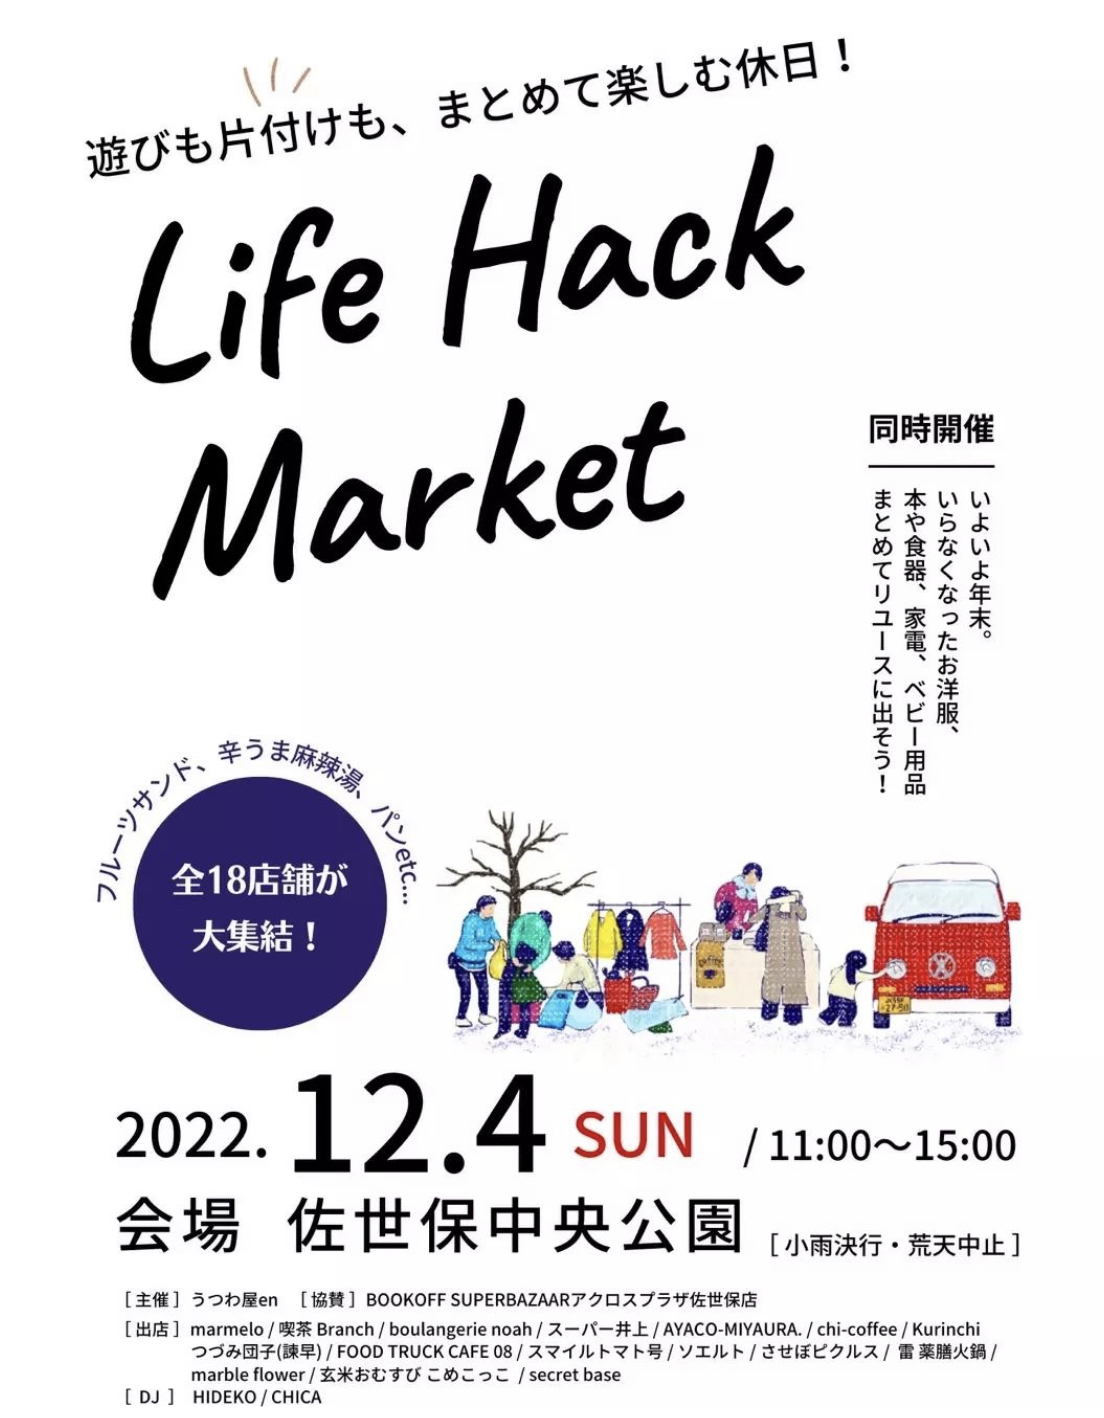 12/4(sun)はLife hack Market